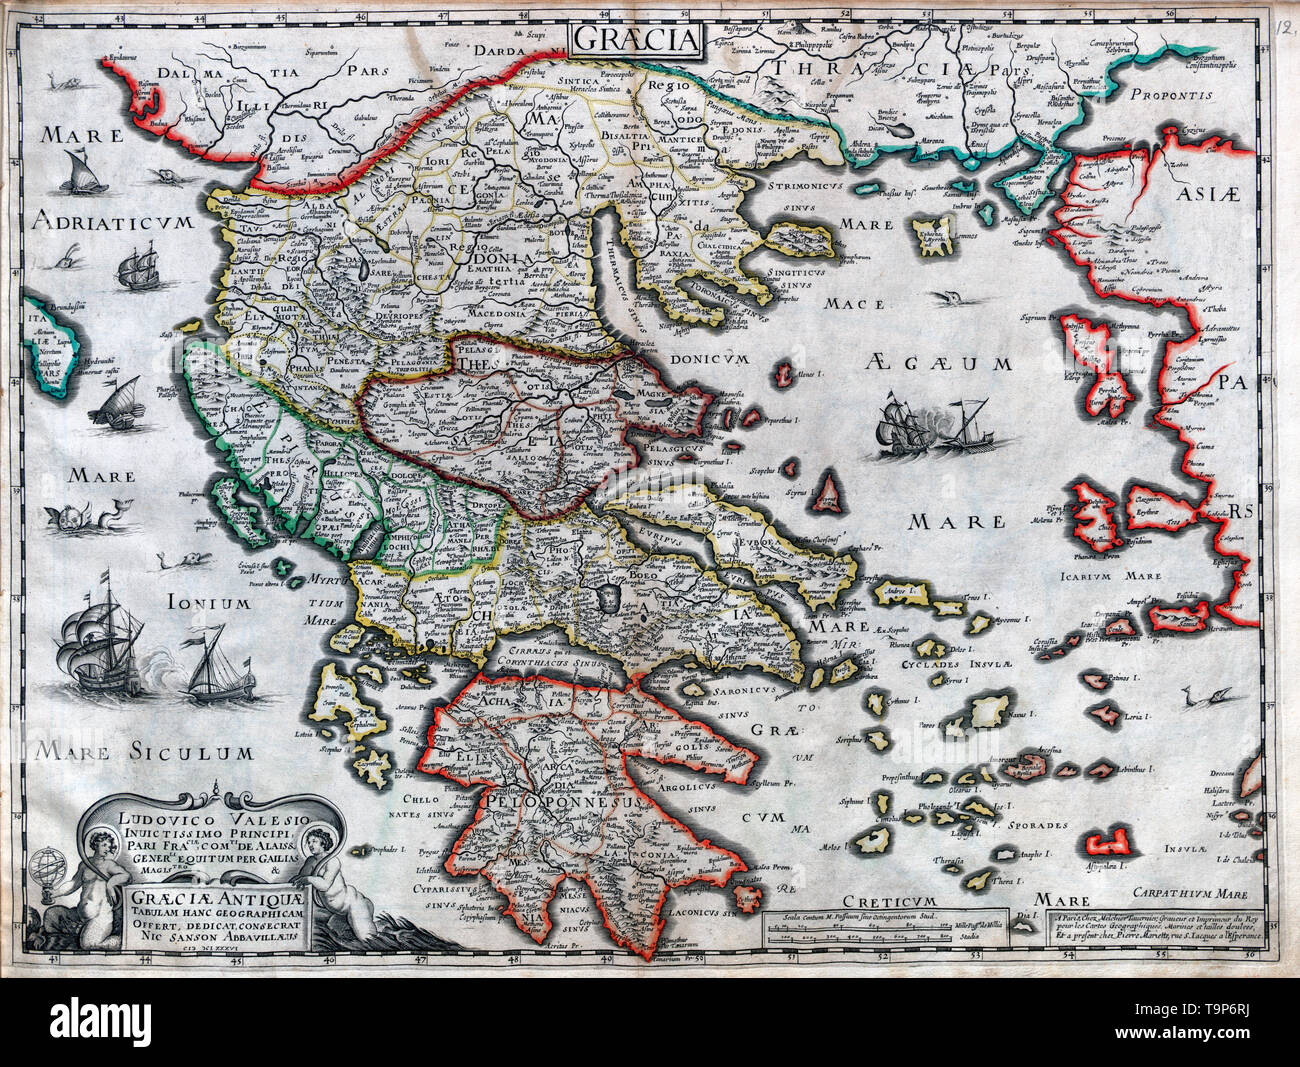 Mappa di Graeciae Antique - Sanson Atlas, circa 1700 Foto Stock